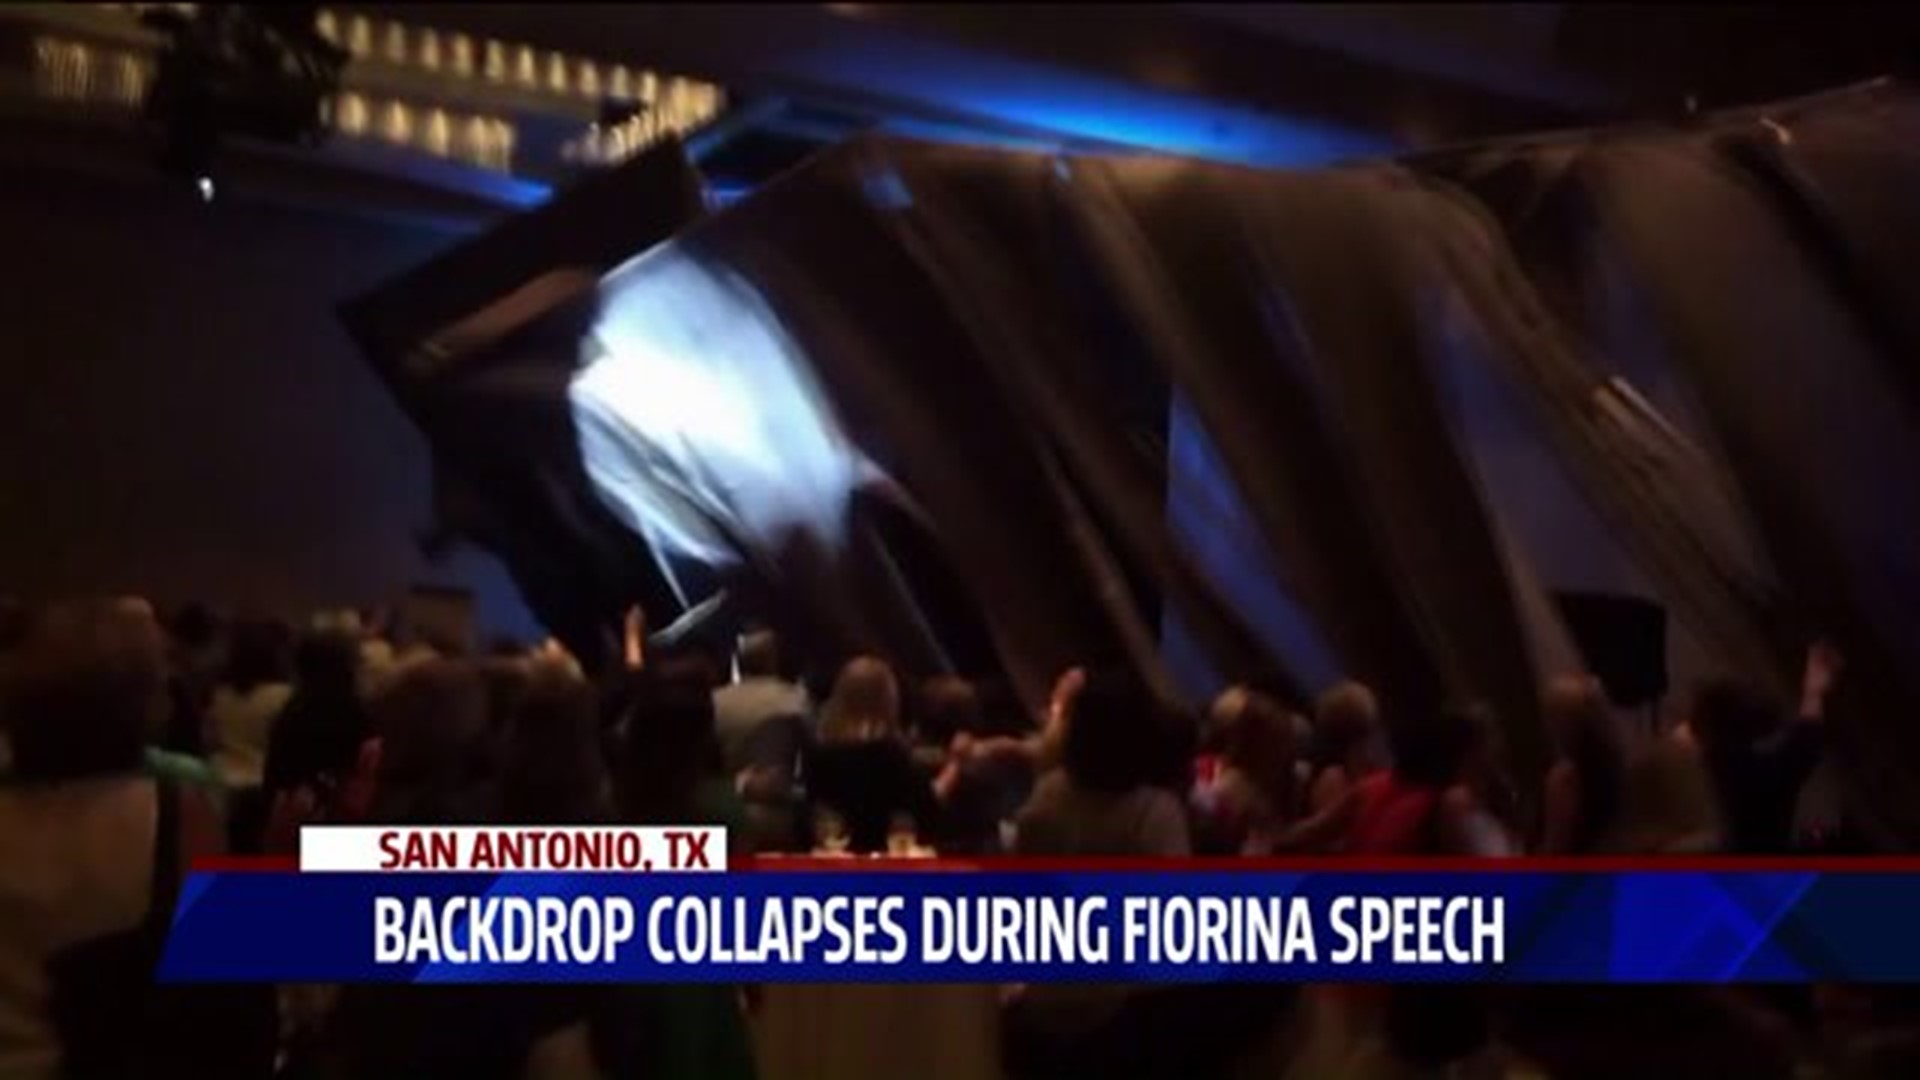 Curtain collapses during Fiorina speech